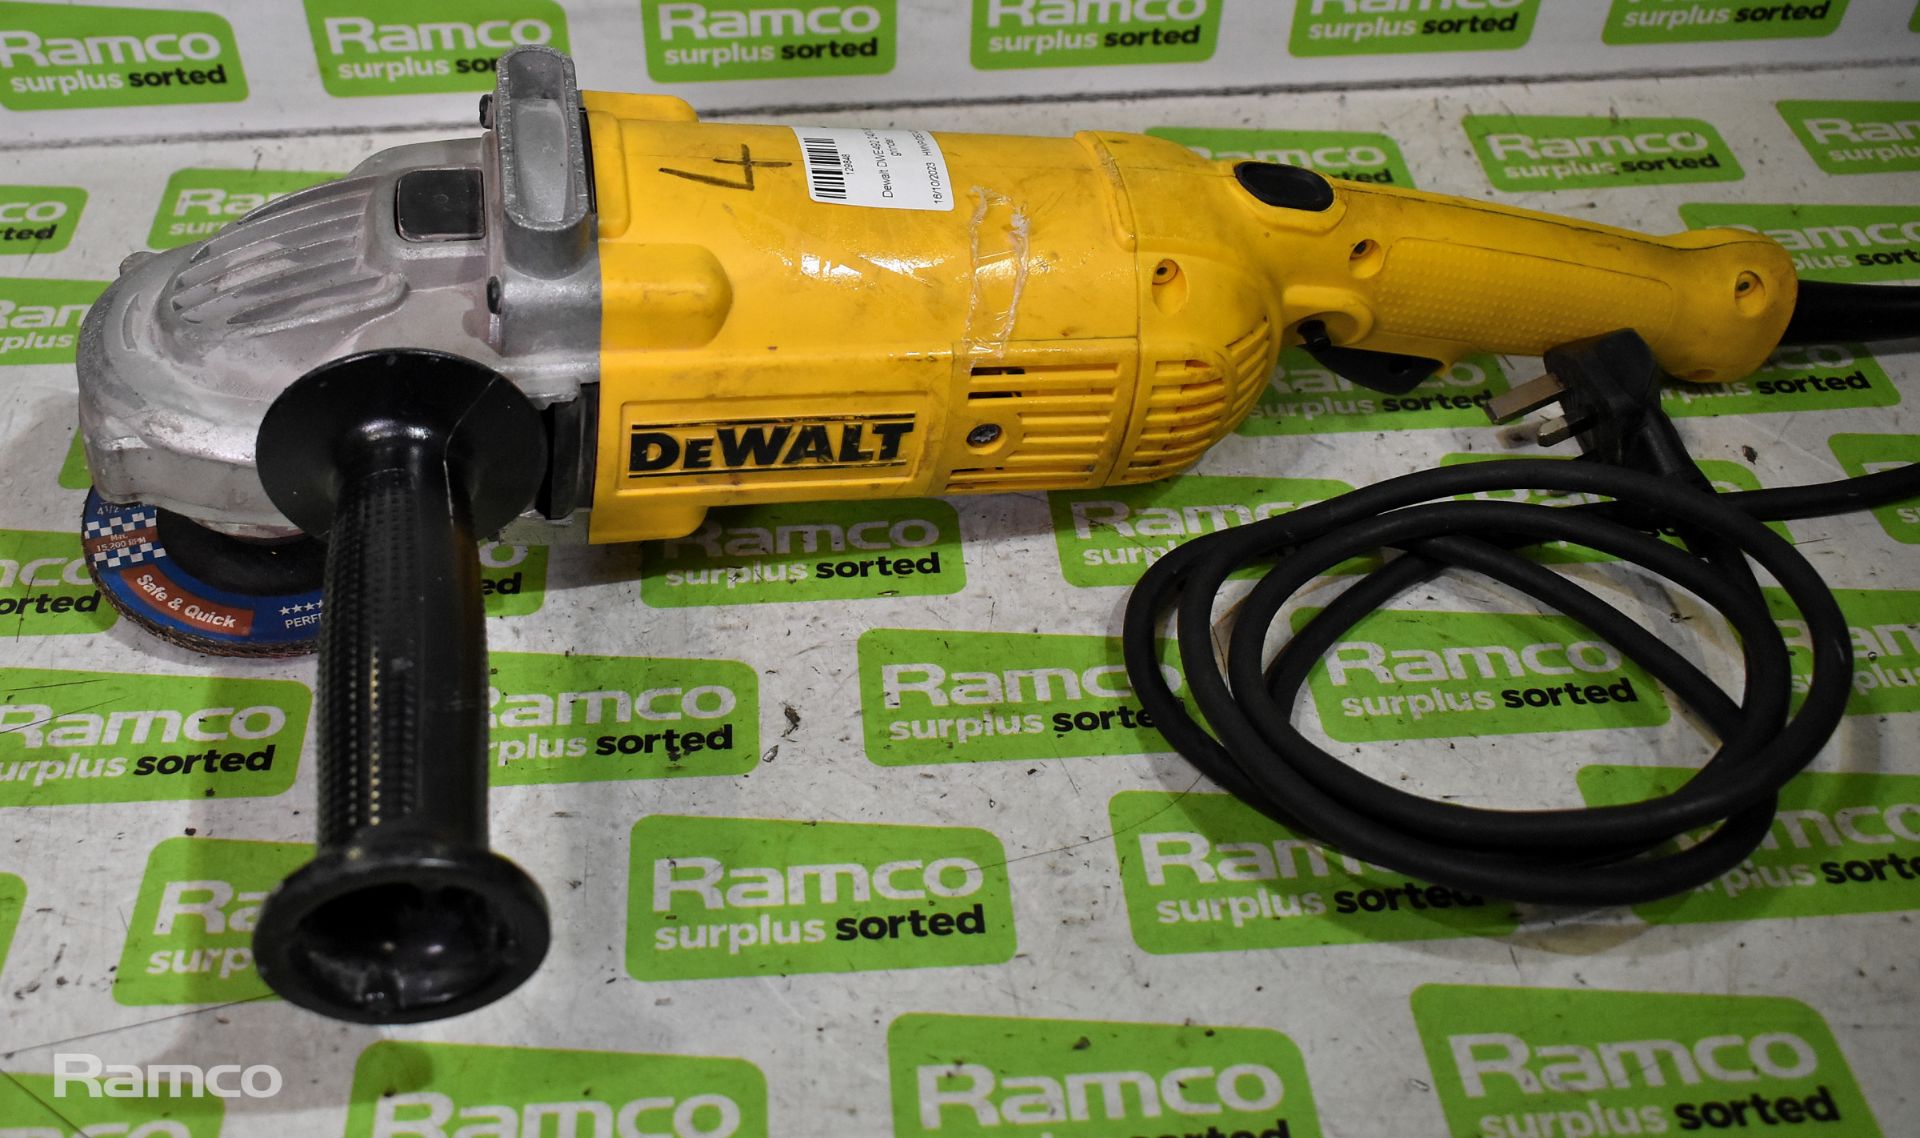 Dewalt DCW210 18V cordless variable speed palm sander - UNIT ONLY, Dewalt DWE492 240V angle grinder - Image 6 of 8